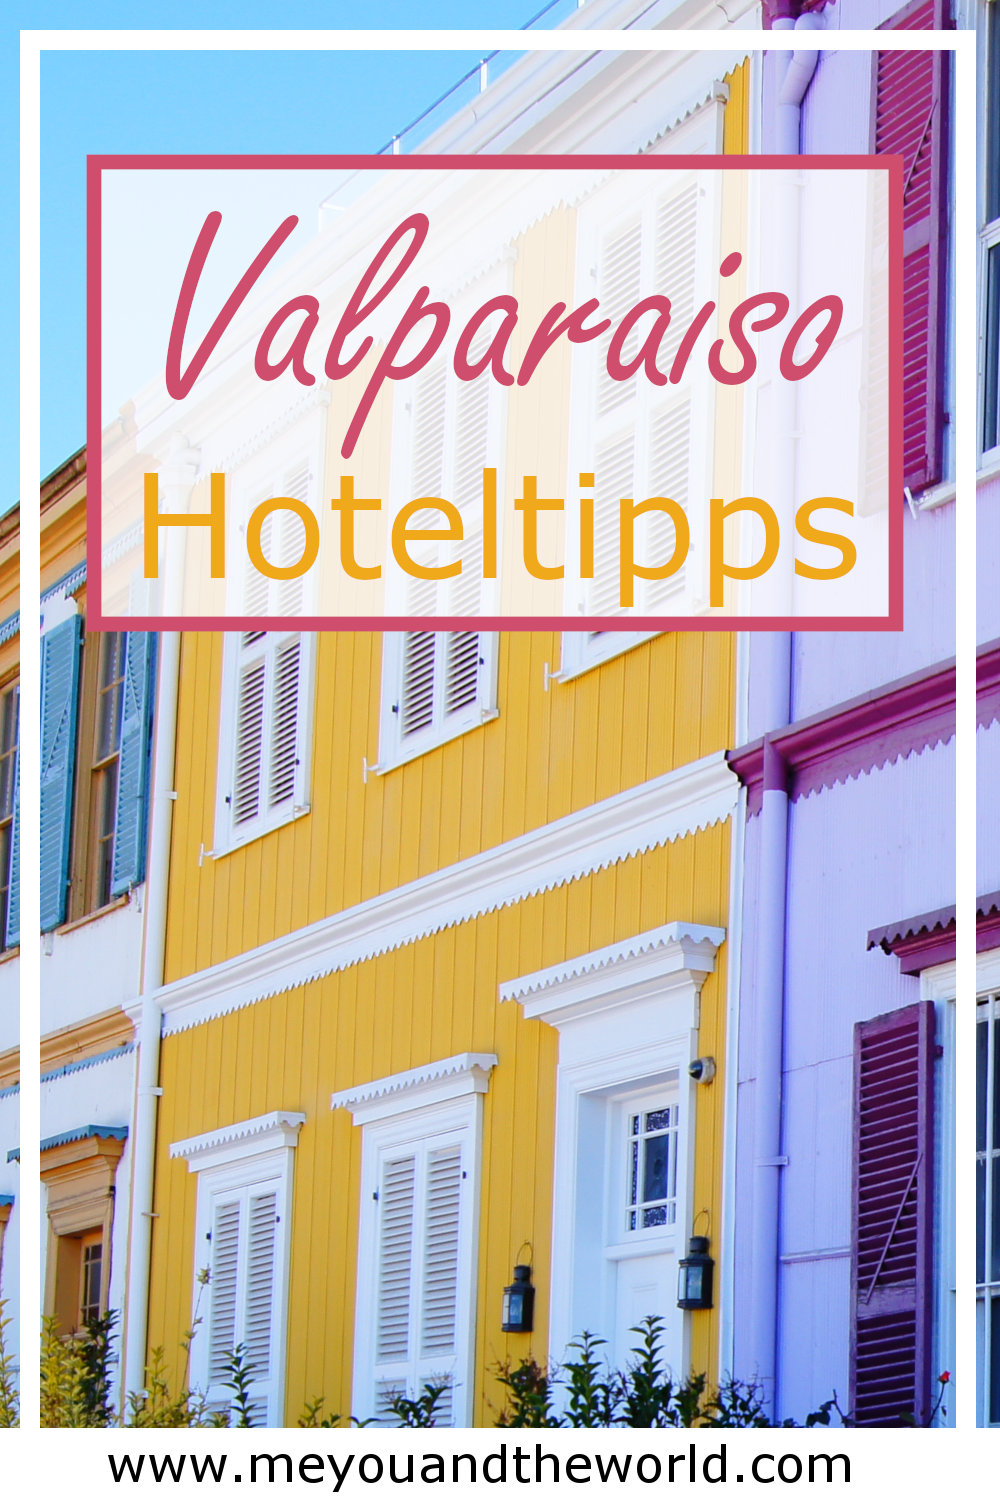 Uebernachte auf den Huegeln von Valparaiso in Hotels 